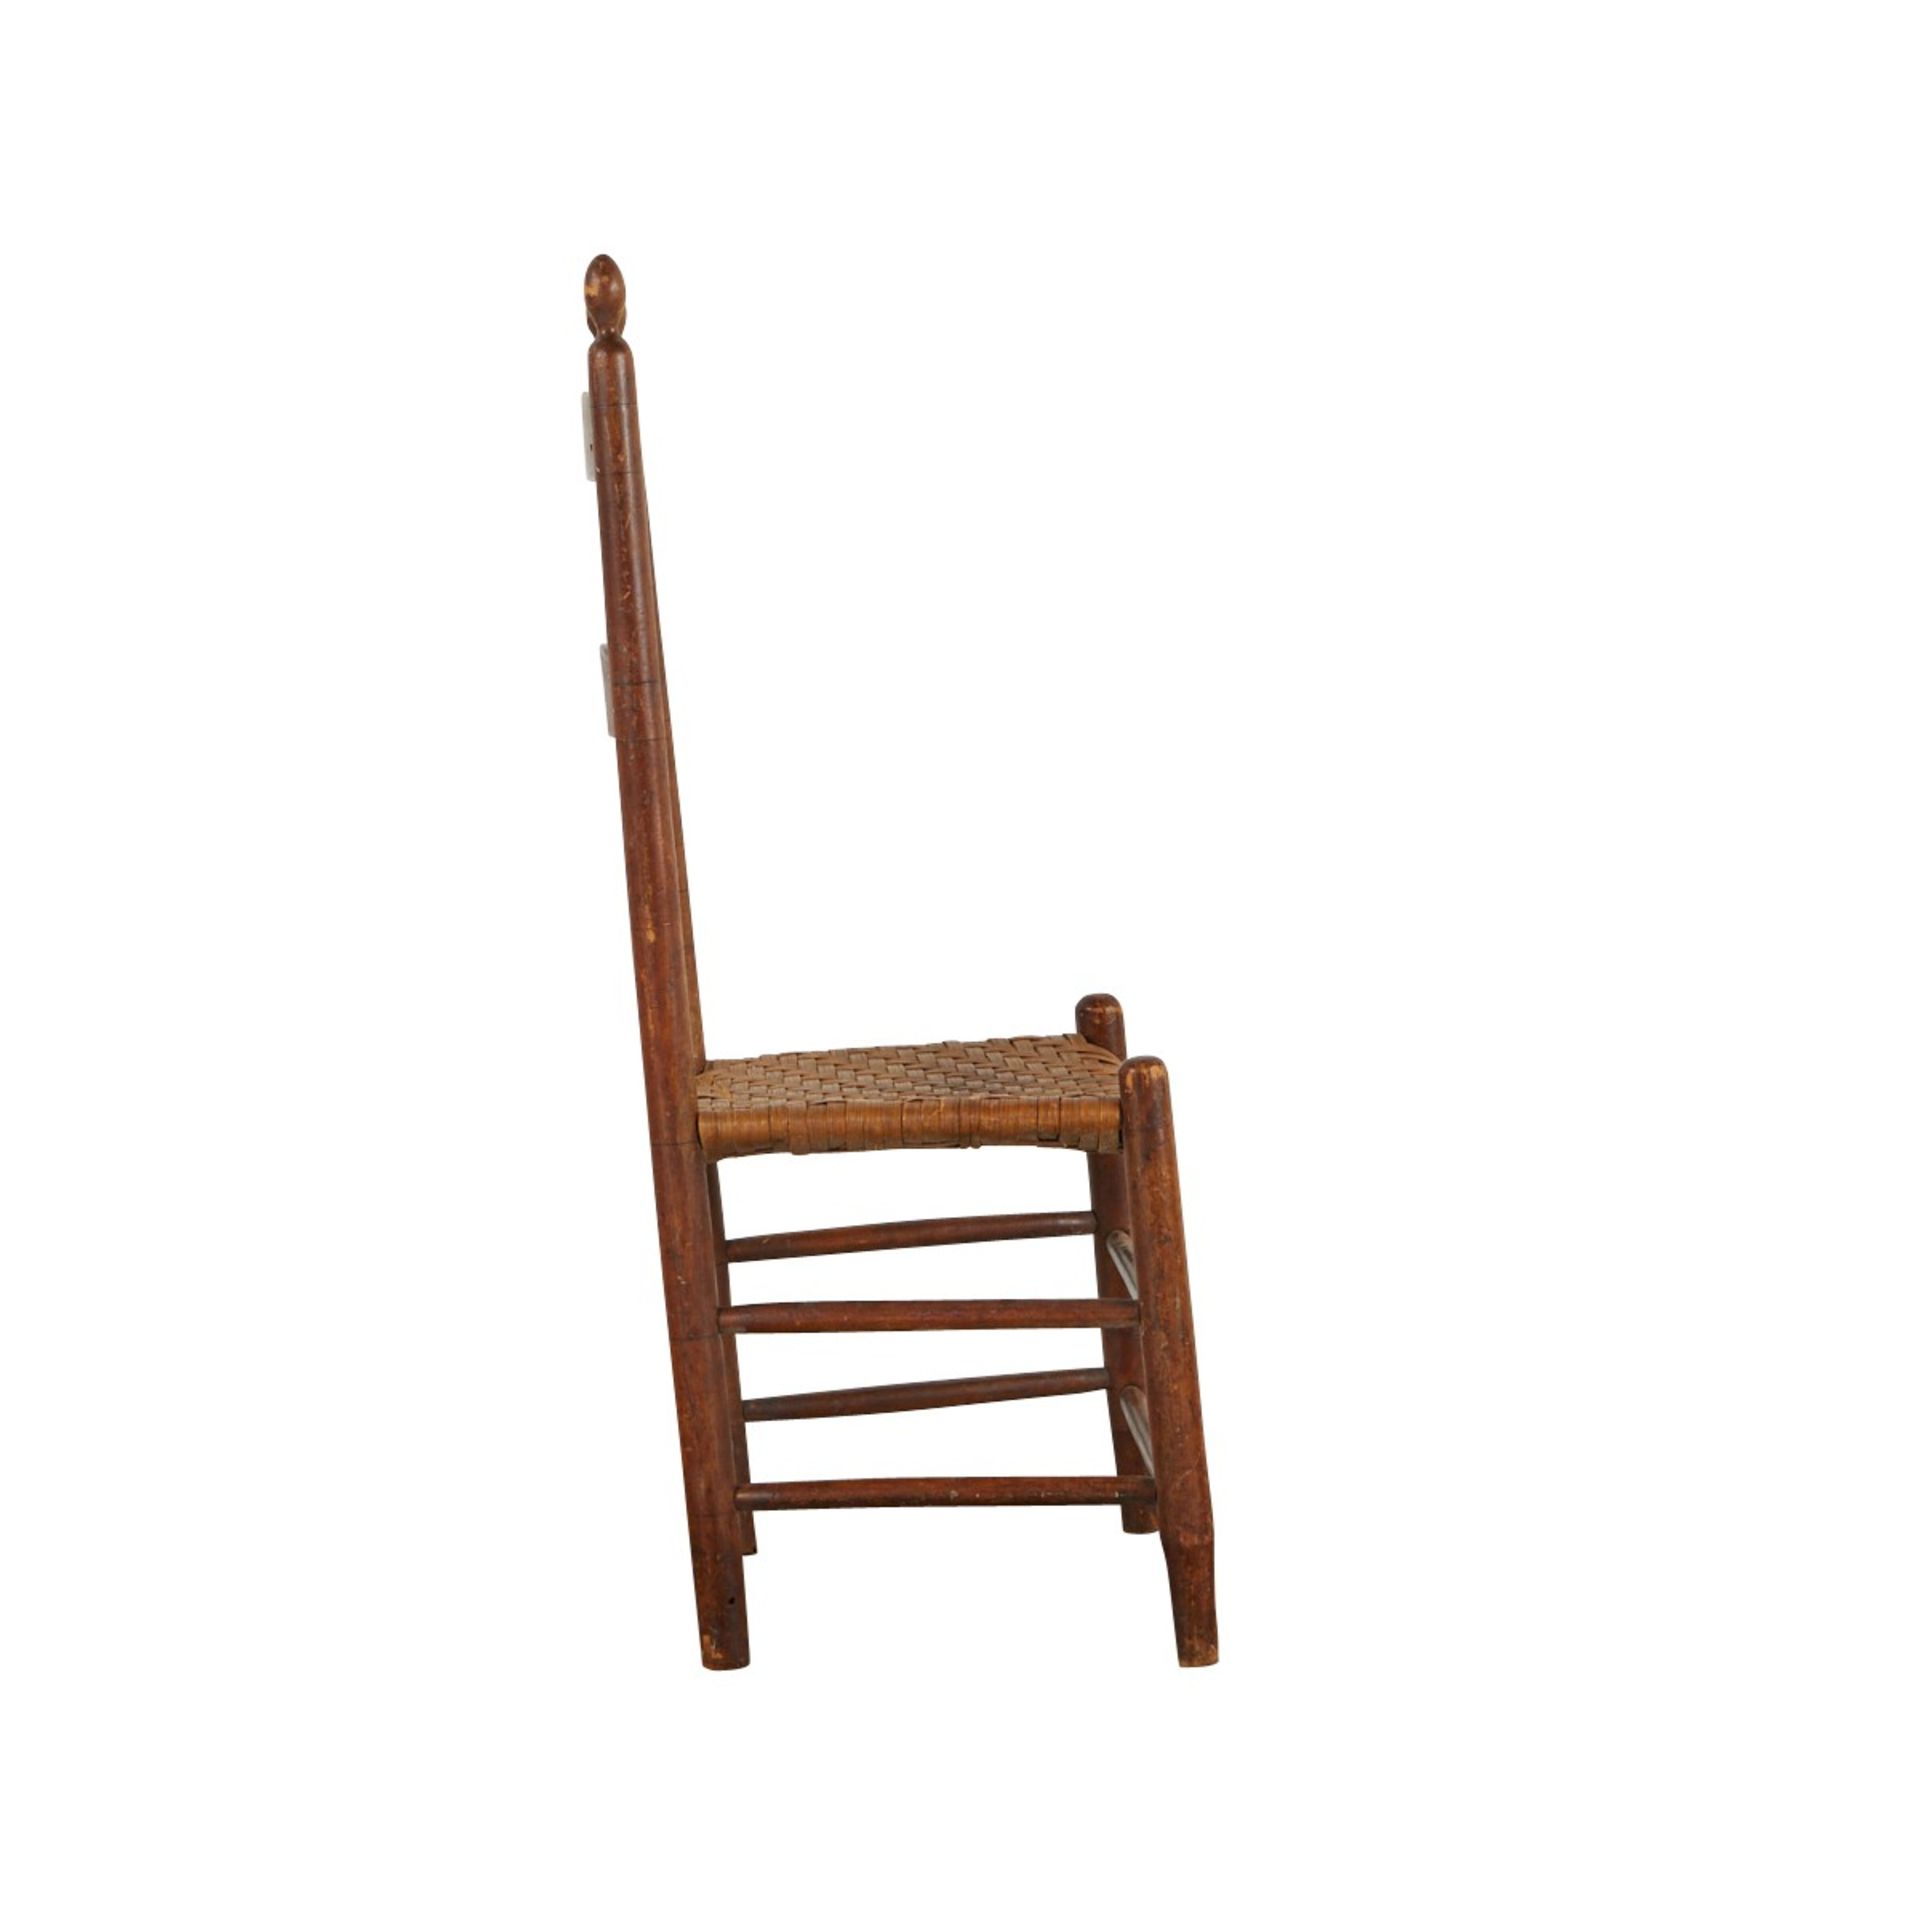 Shaker Freegift Wells Watervliet Chair ca 1830 - Image 3 of 8